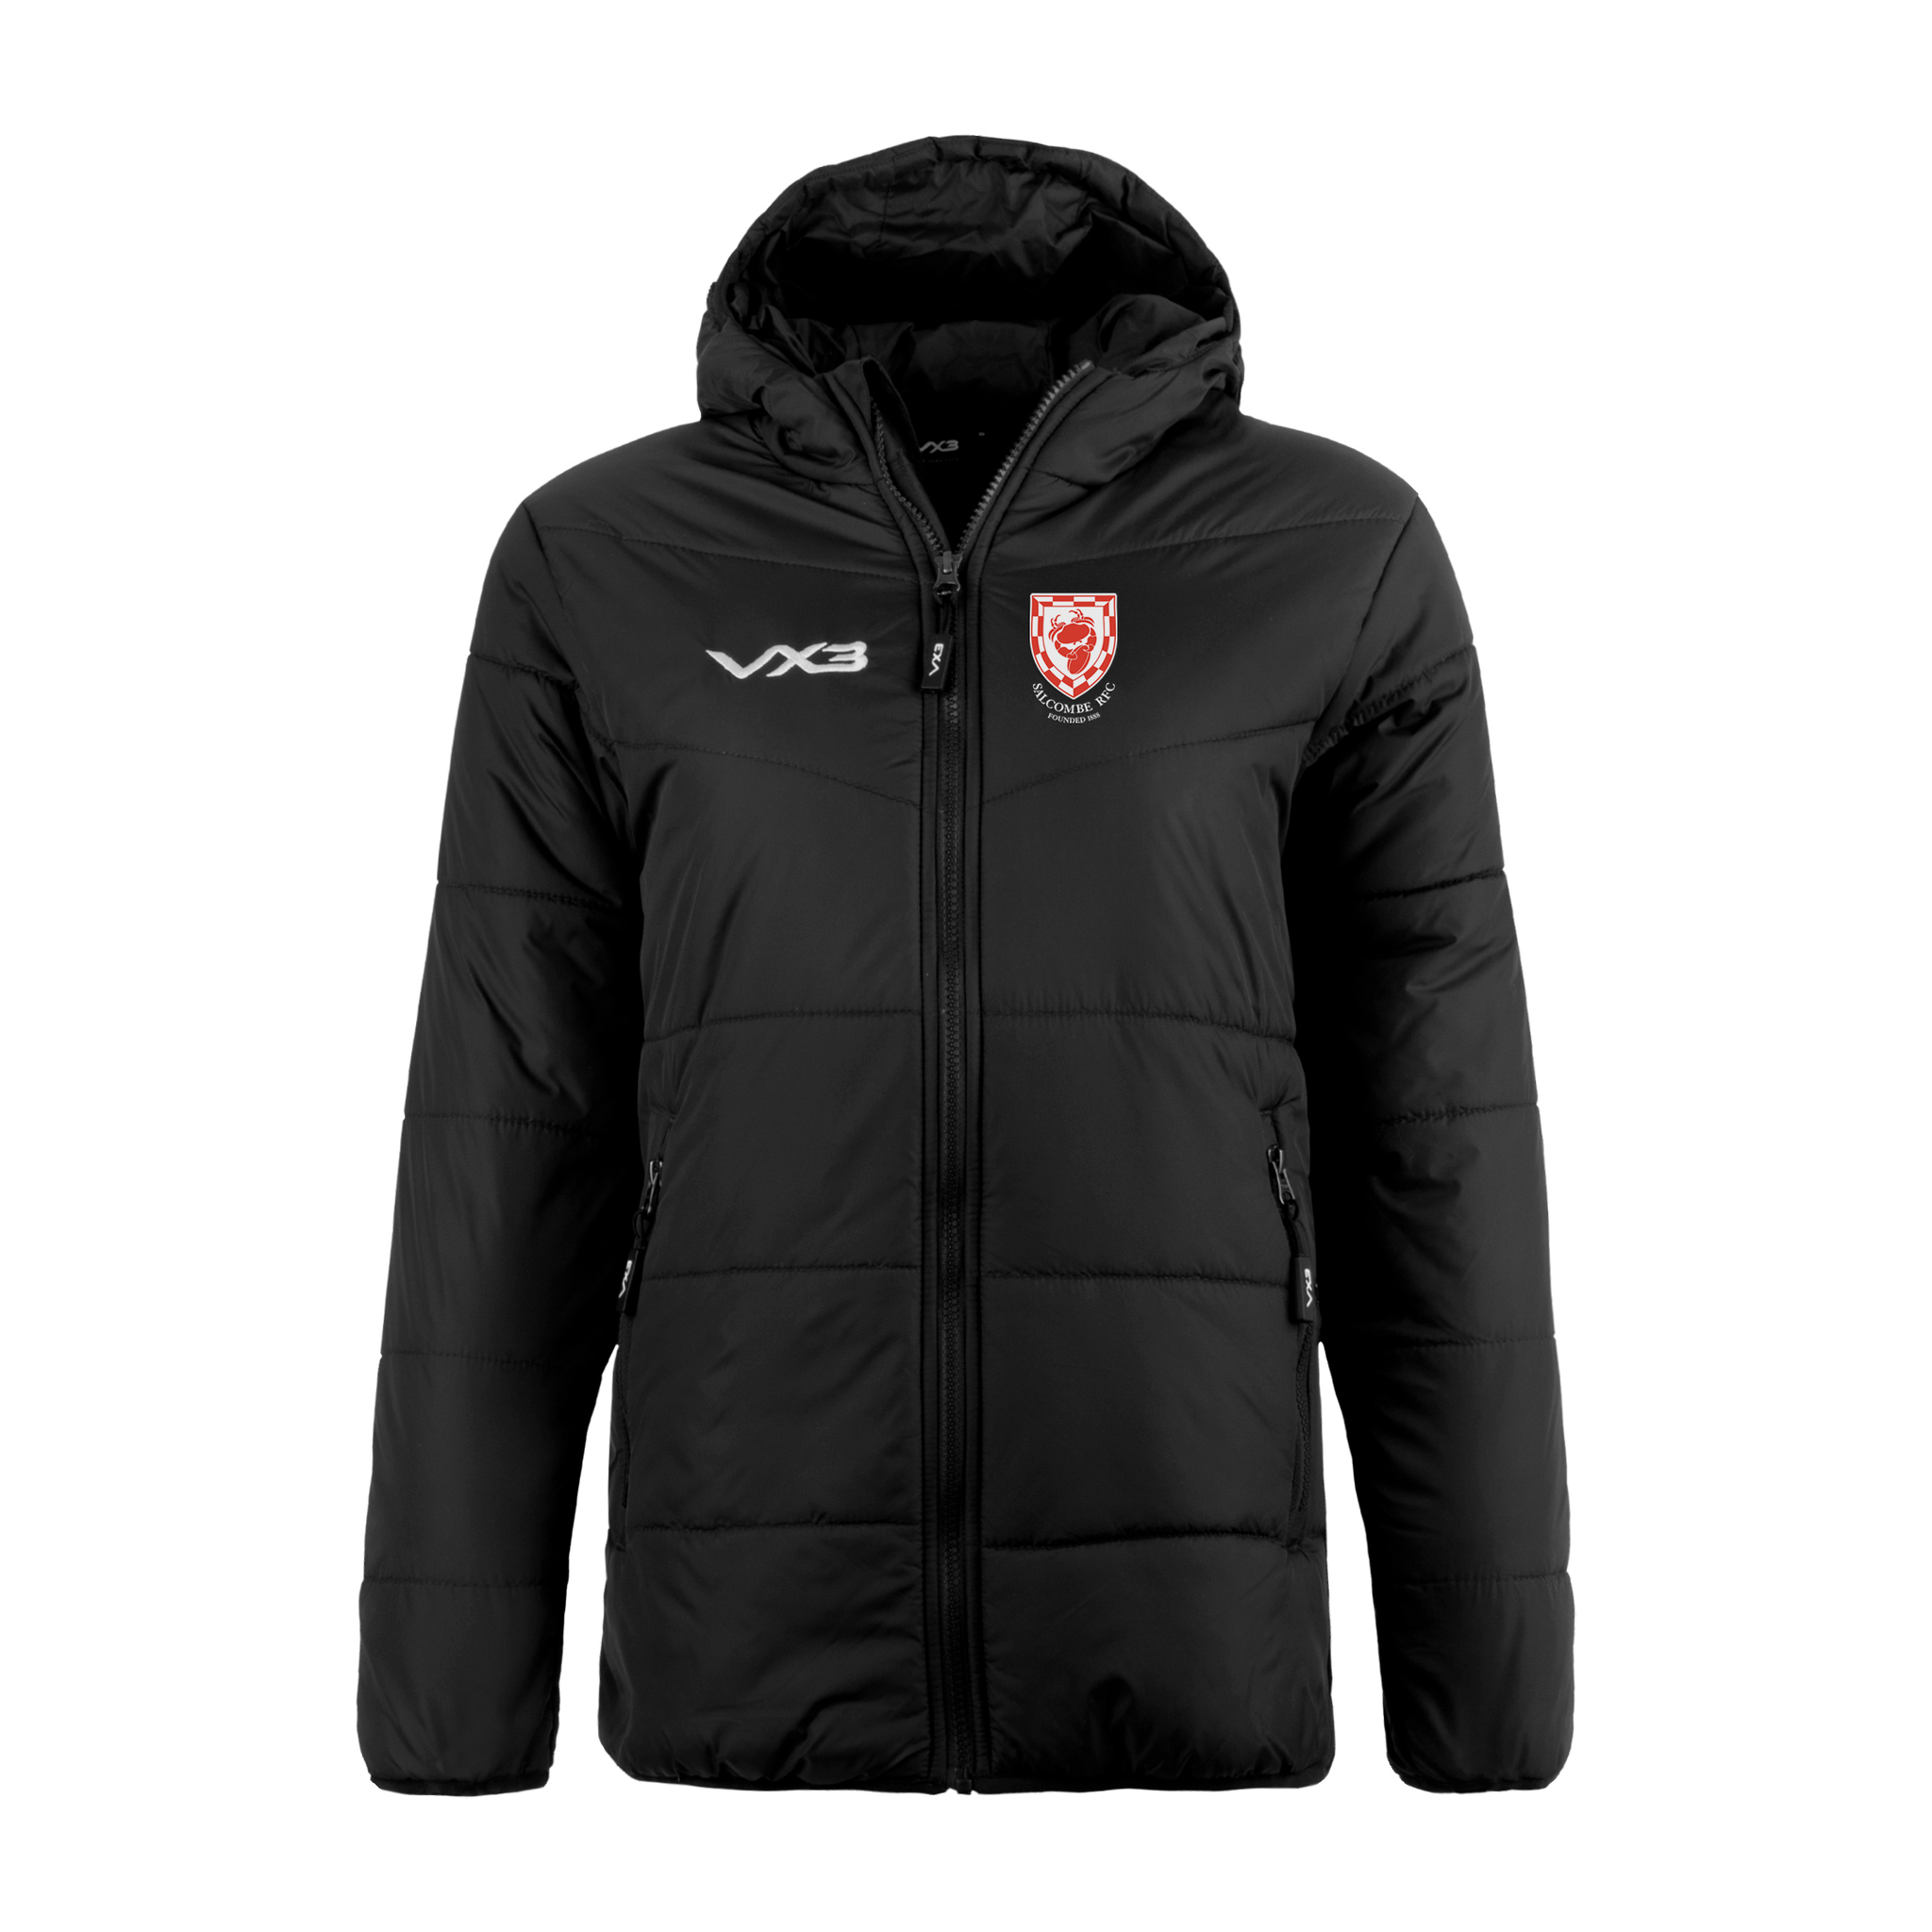 Salcombe RFC Lorica Ladies Quilted Jacket